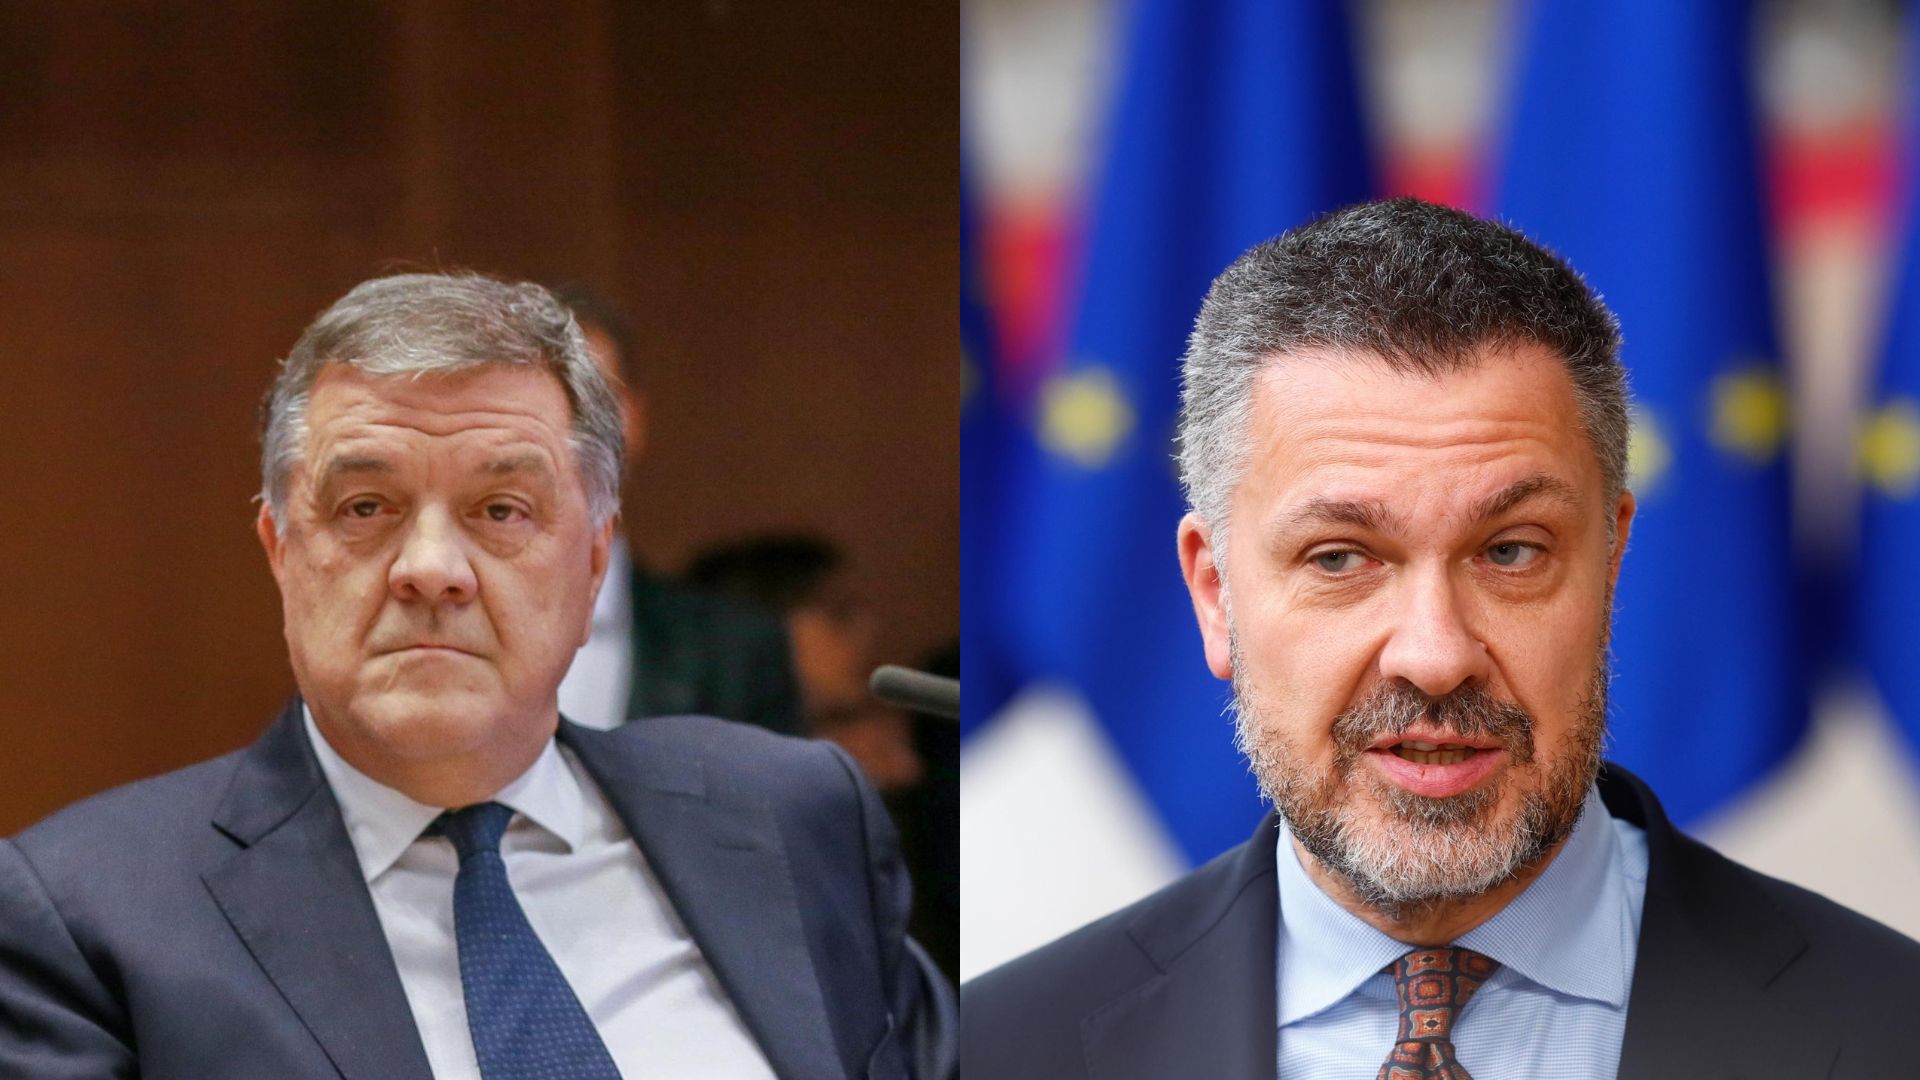 Antonio Panzeri e Luca Visentini: chi sono i due italiani fermati per l’inchiesta corruzione in Belgio